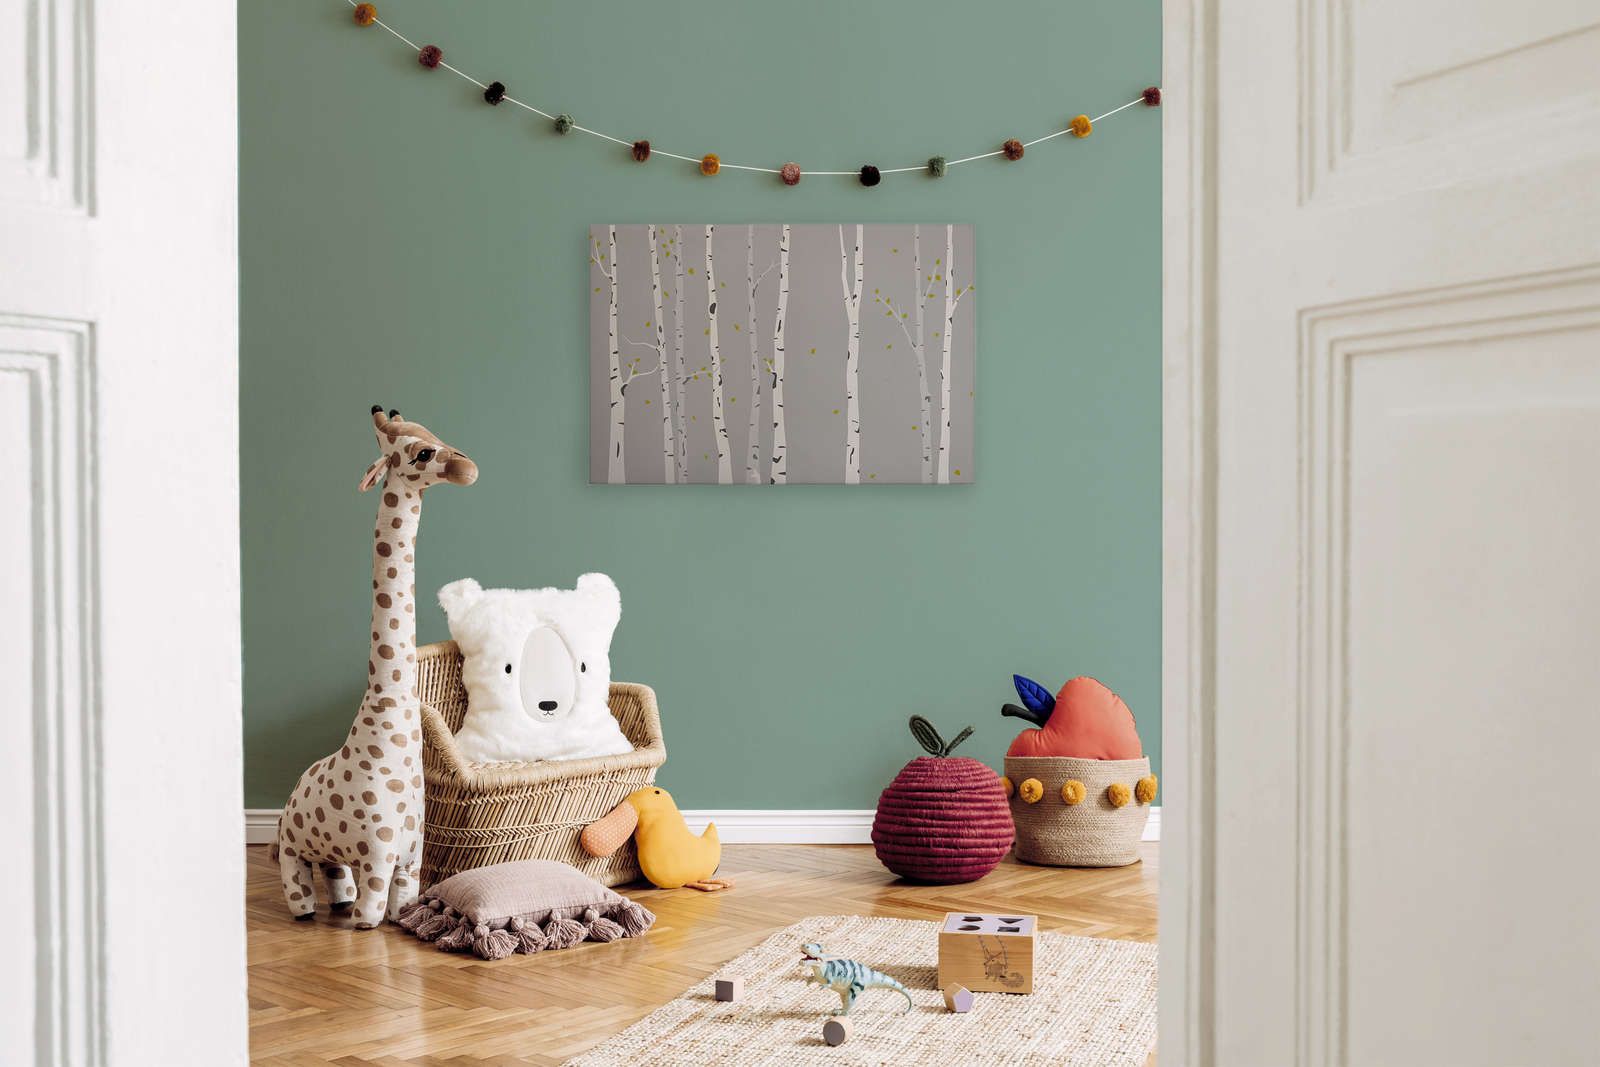             Tela con bosco di betulle dipinto per la camera dei bambini - 90 cm x 60 cm
        